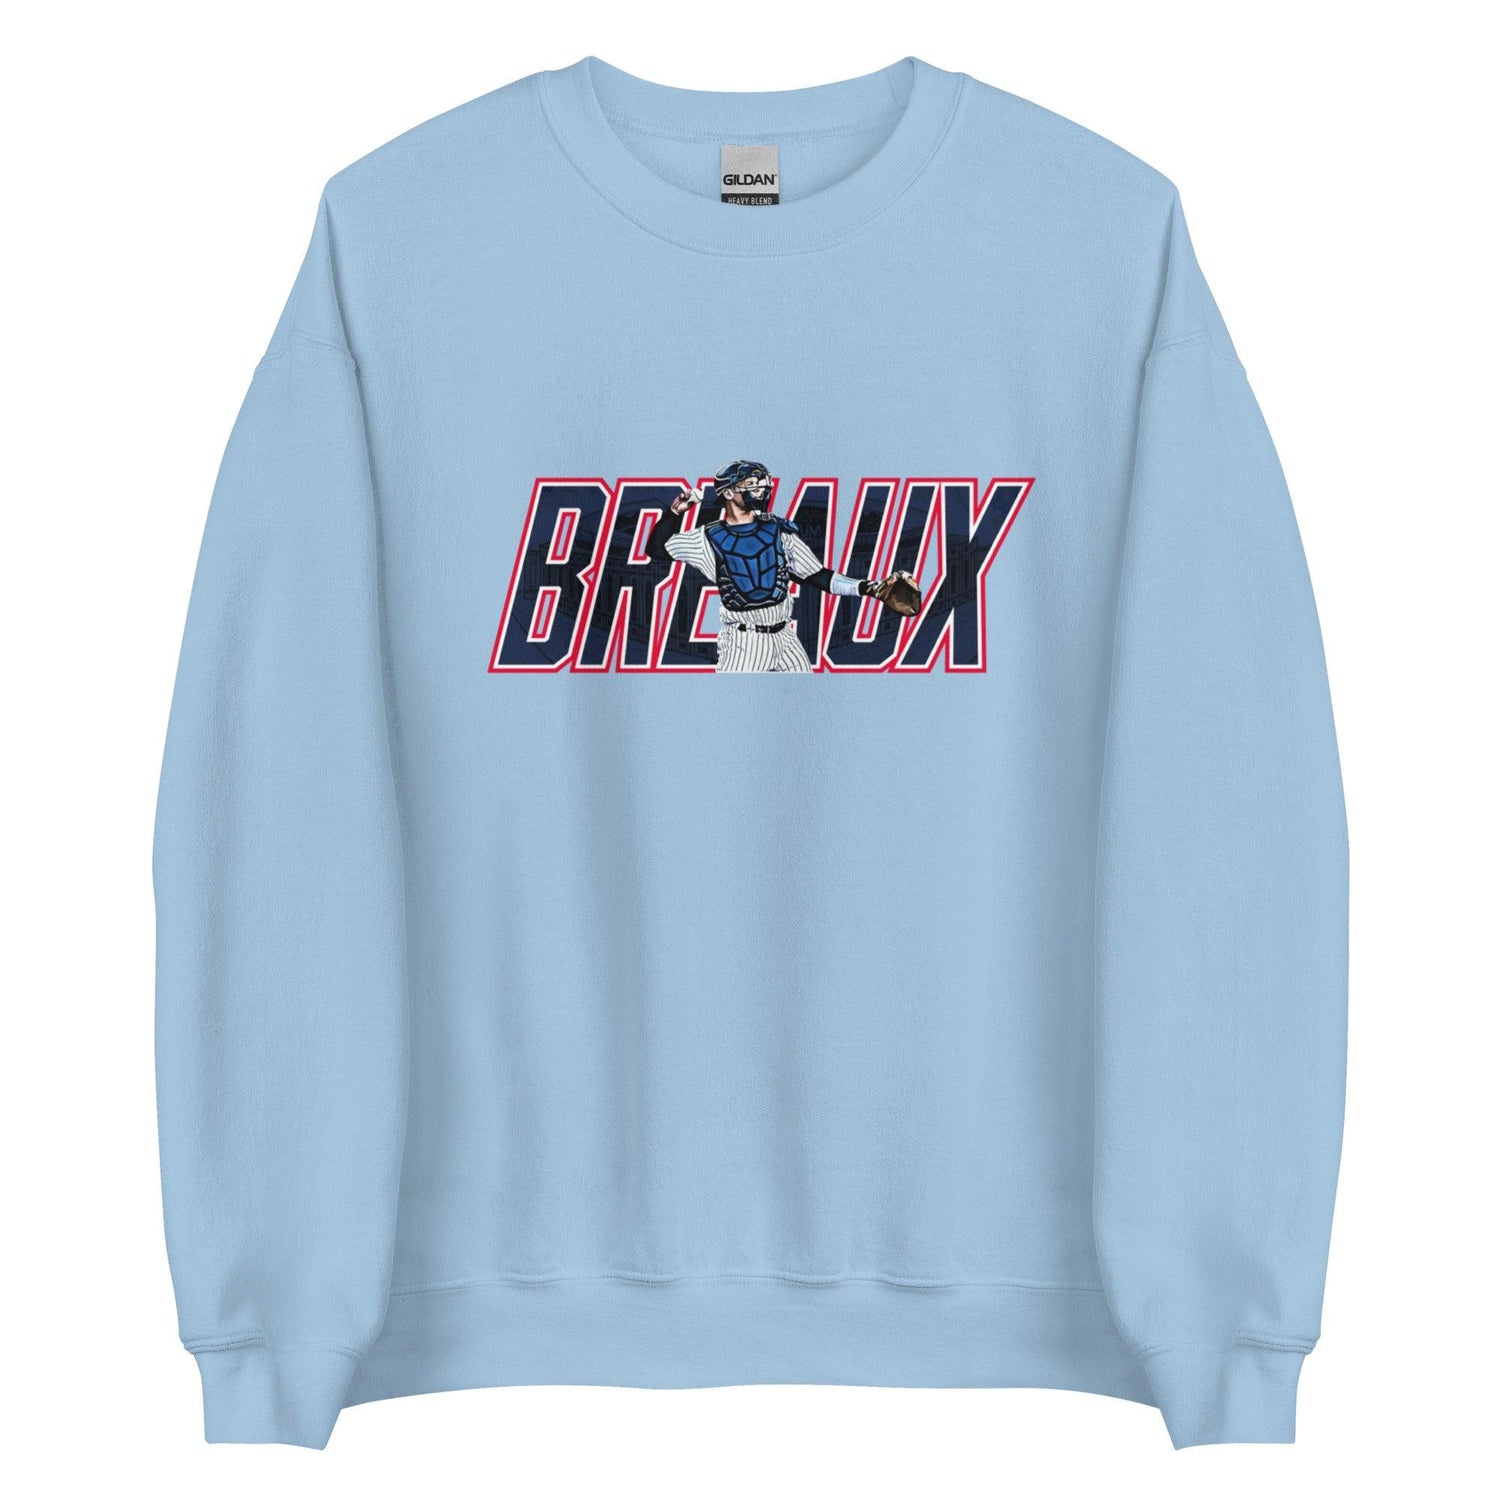 Josh Breaux "Throwback" Sweatshirt - Fan Arch